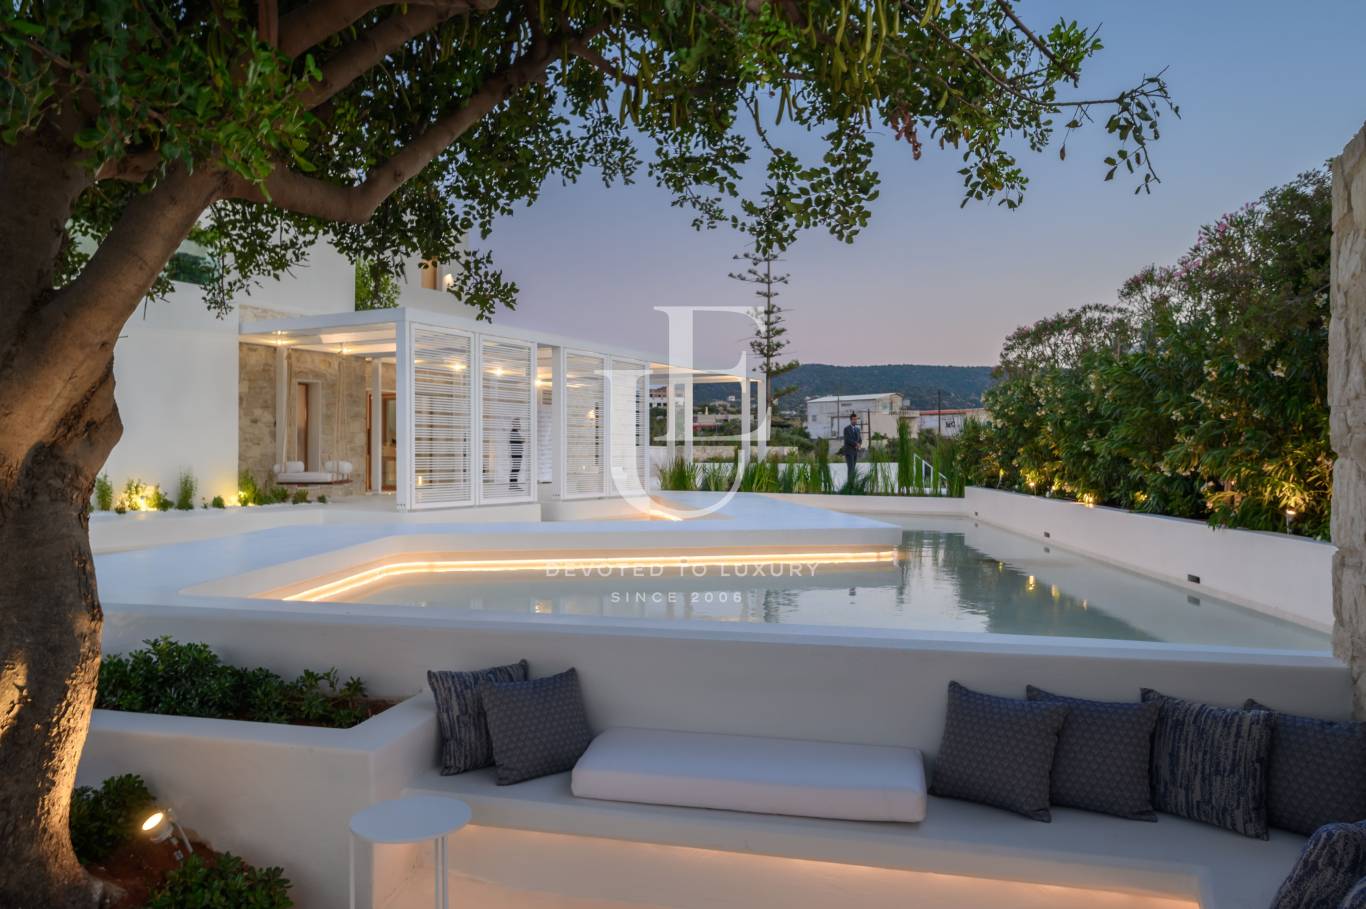 Хотел / Apartment house за продажба в остров Крит,  - код на имота: N21077 - image 9